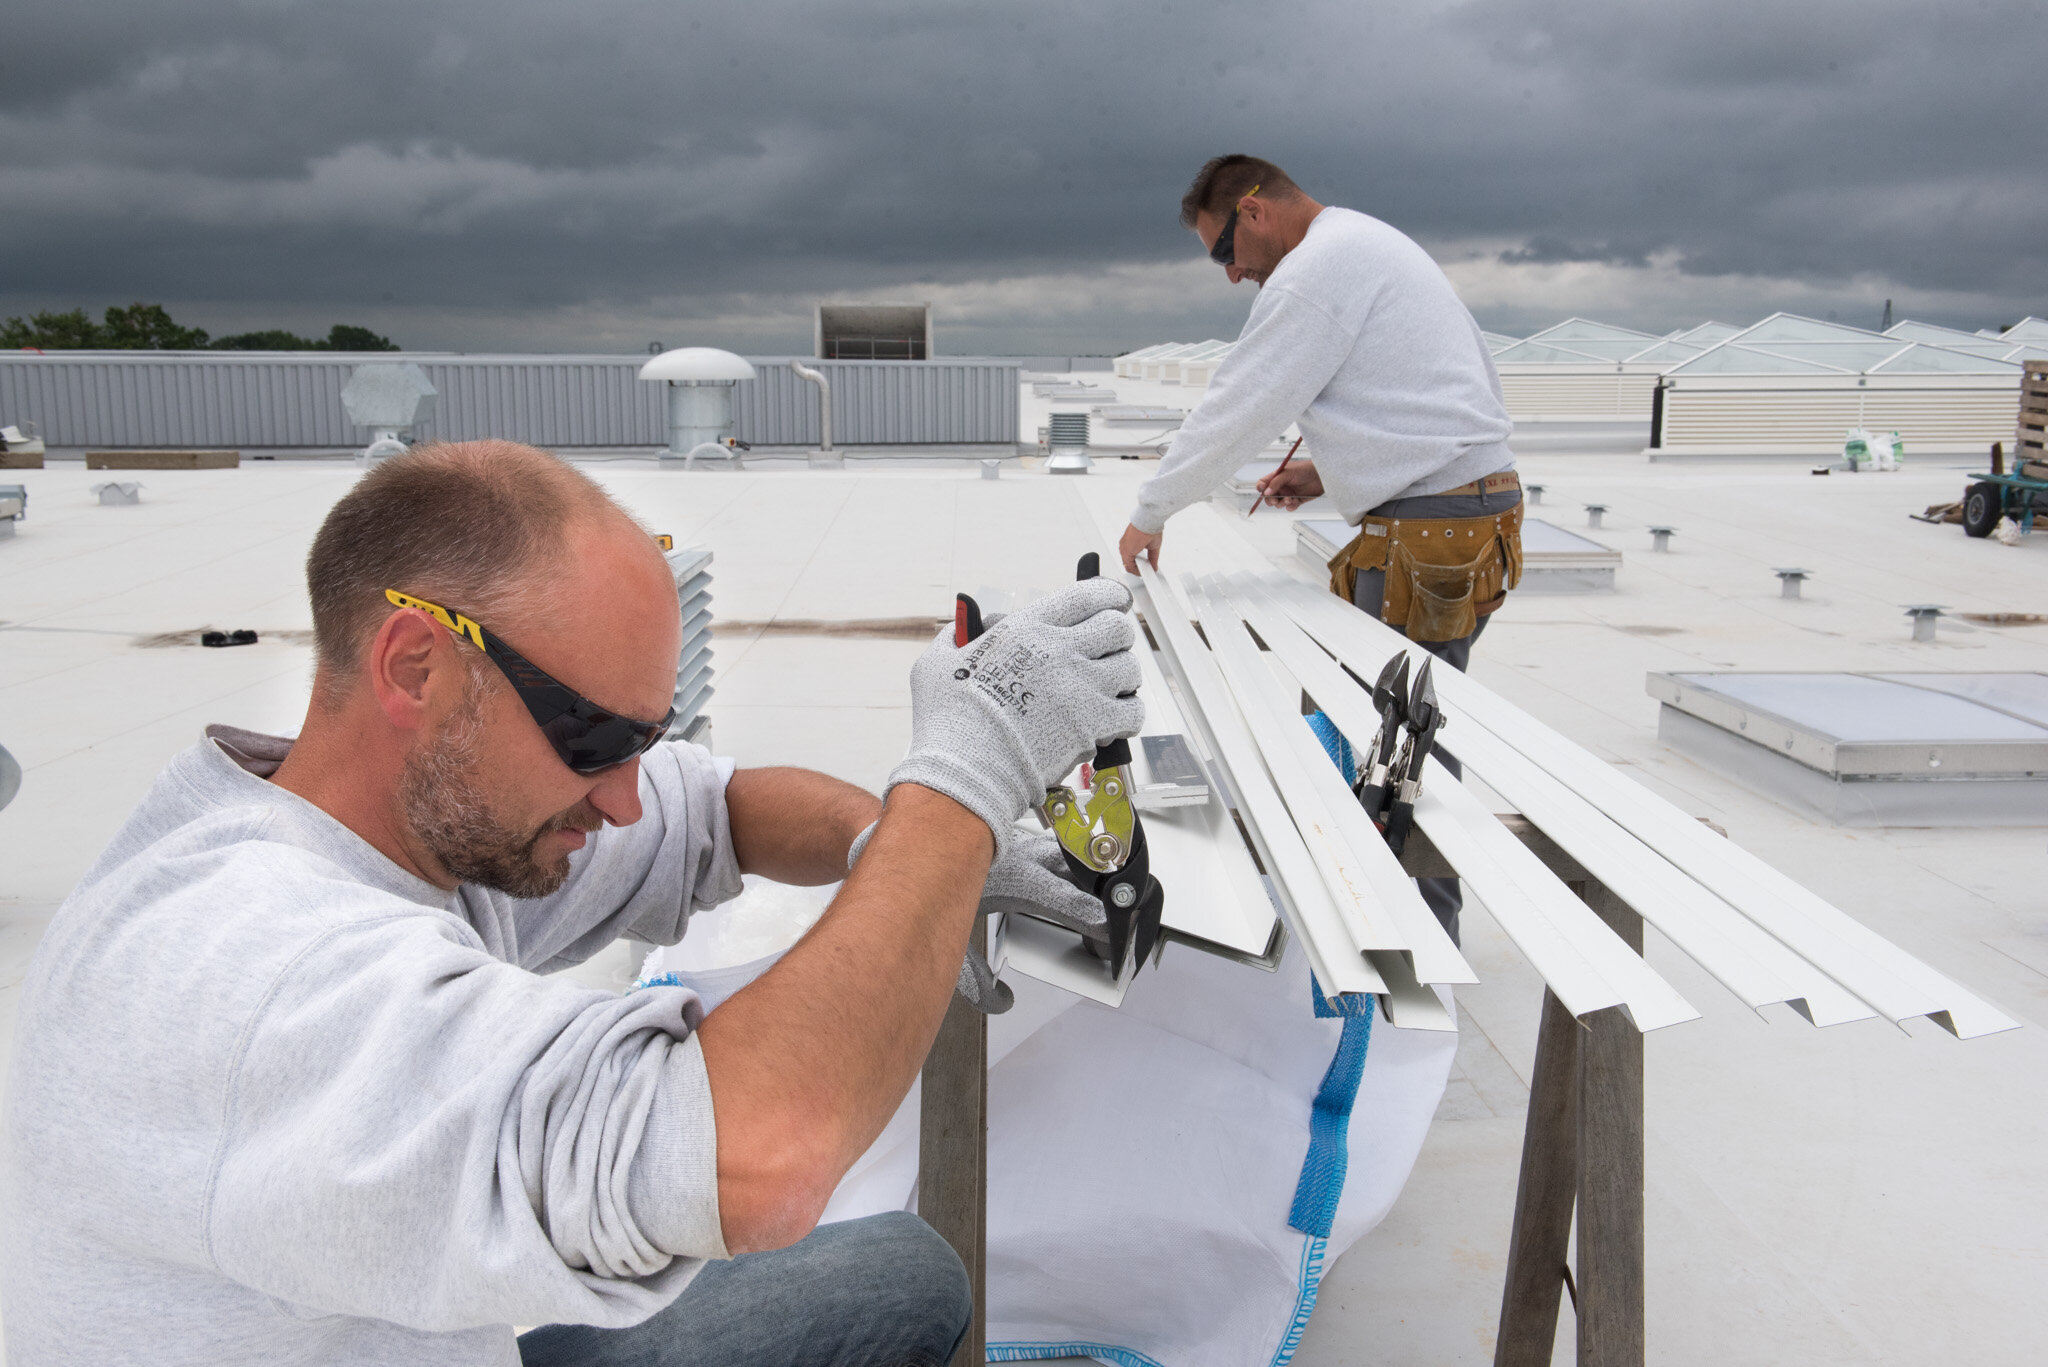    Nouveau/new MIN de Nantes pour Eiffage construction    Installing solar panels on roof 